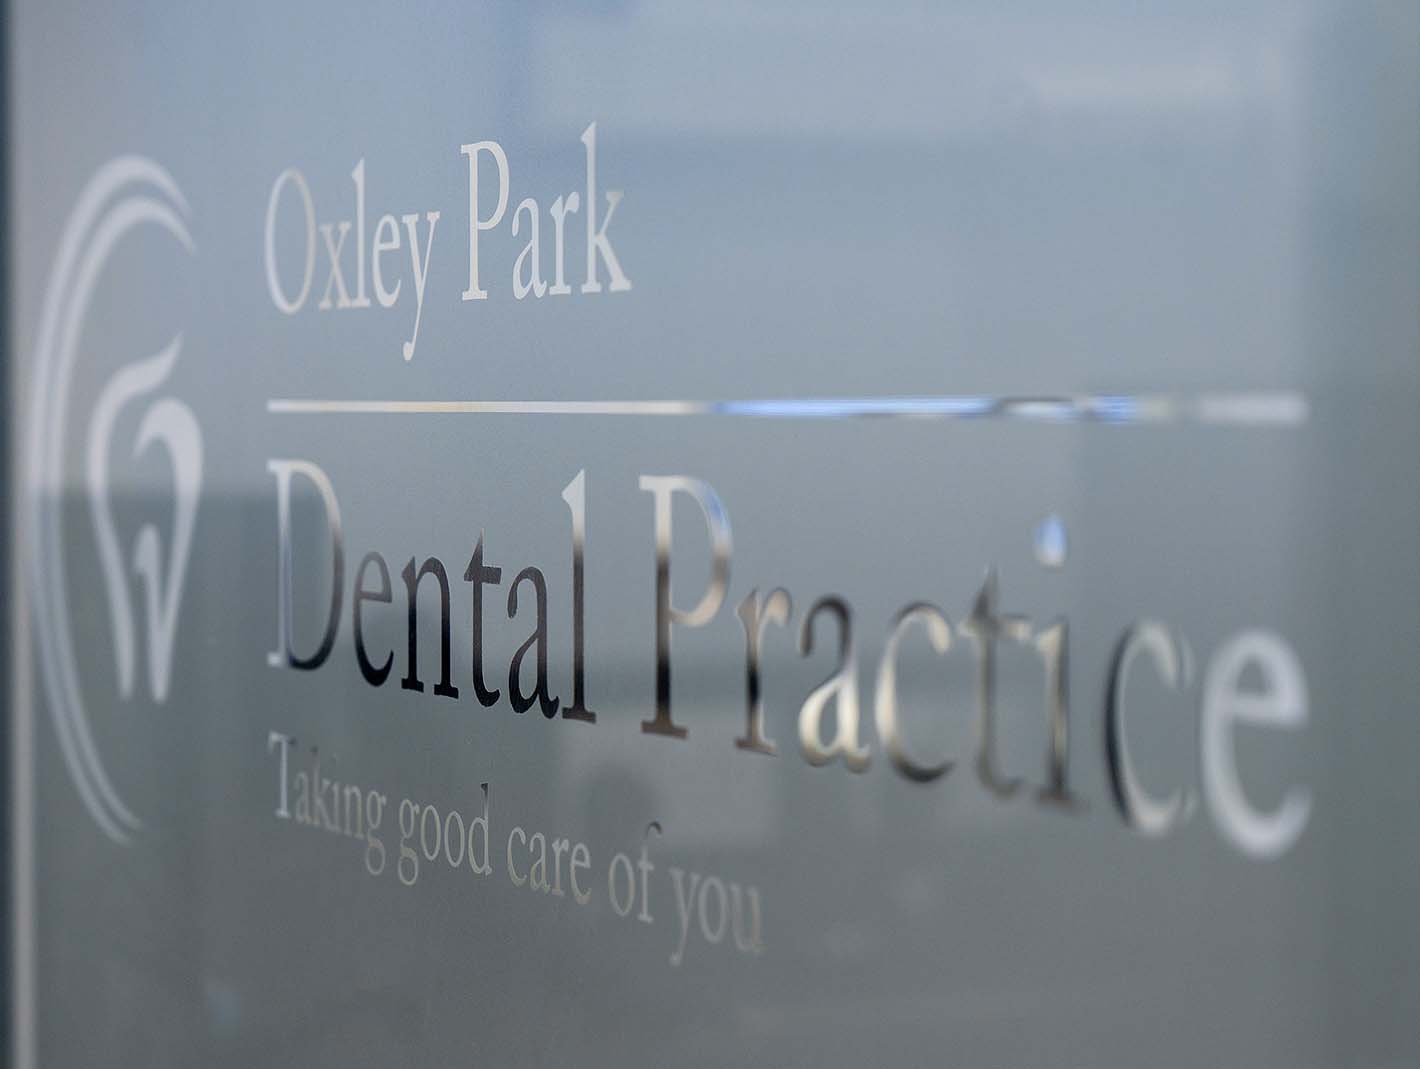 Why Choose Us | Oxley Park Dental Practice in Milton Keynes